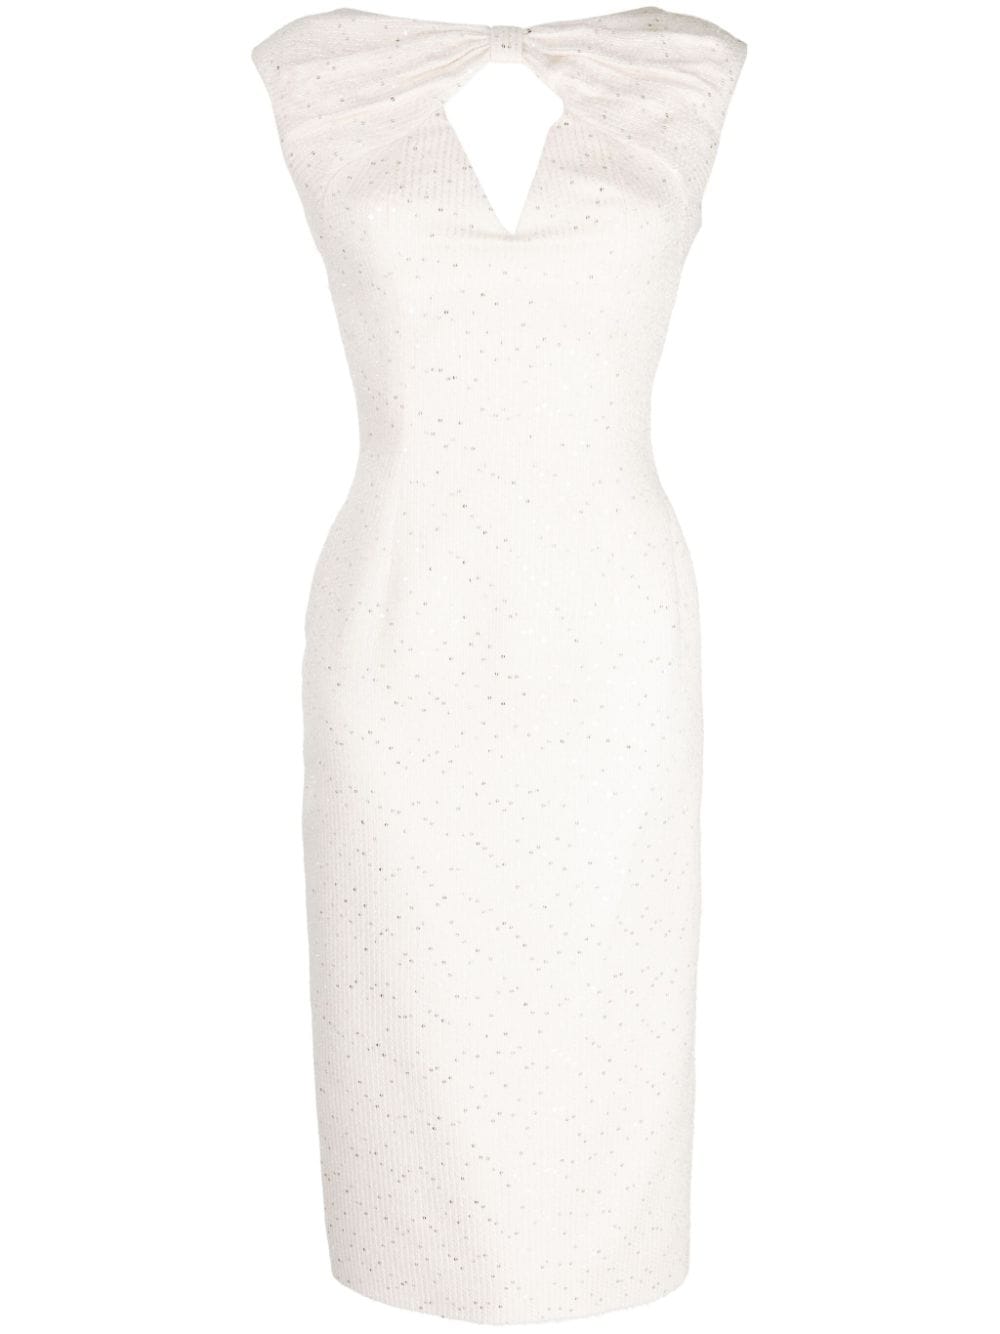 Saiid Kobeisy sequin-embellished tweed midi dress - White von Saiid Kobeisy